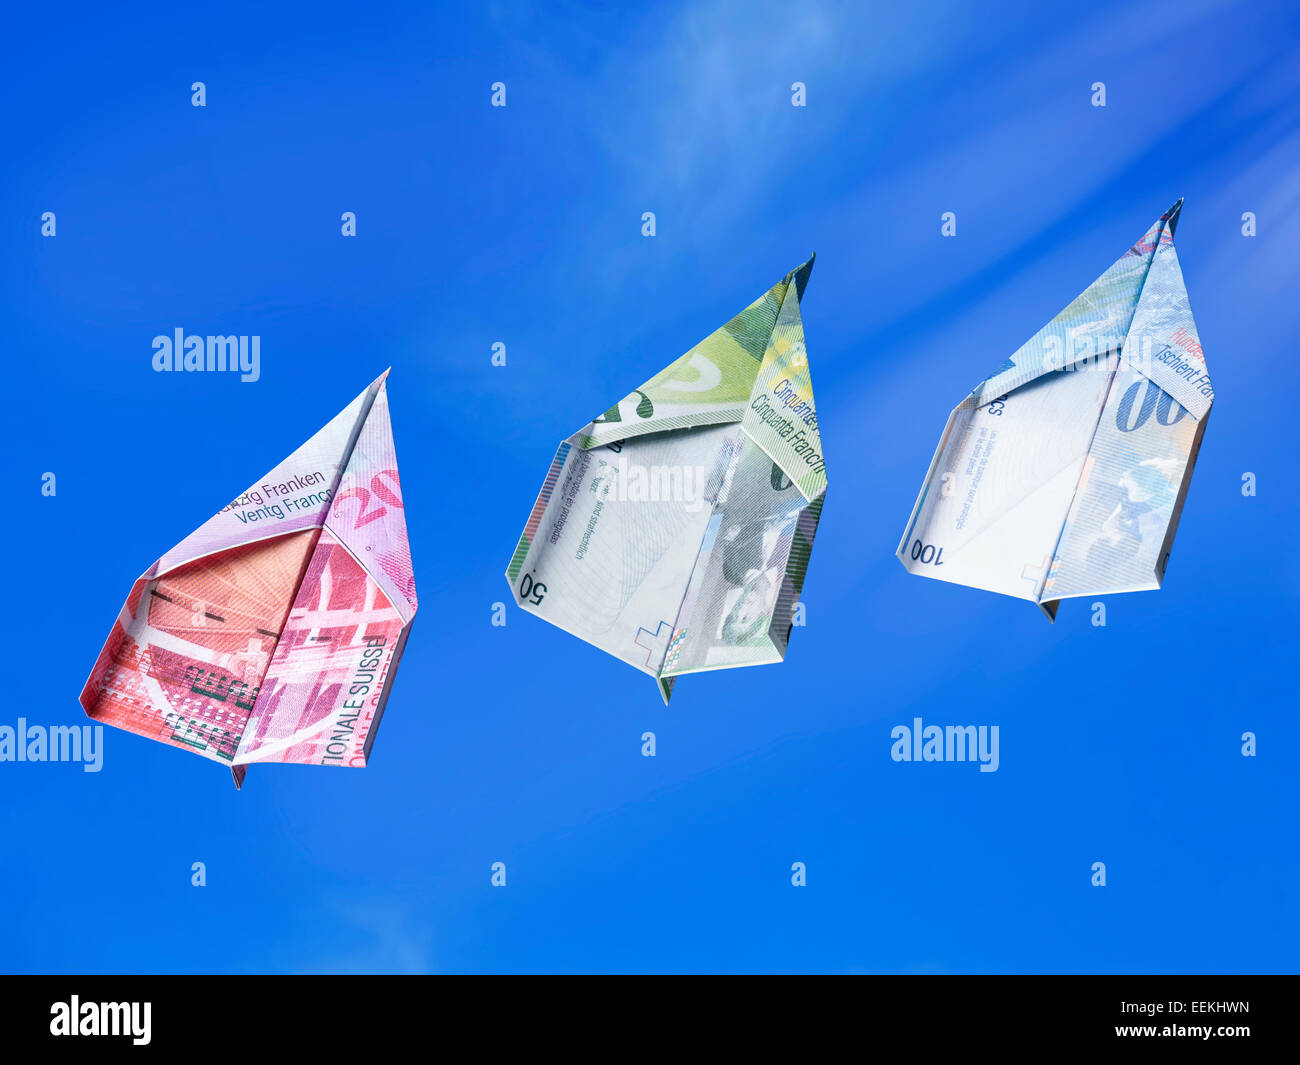 Billets en Franc Suisse toy planes passant haut dans le ciel Banque D'Images